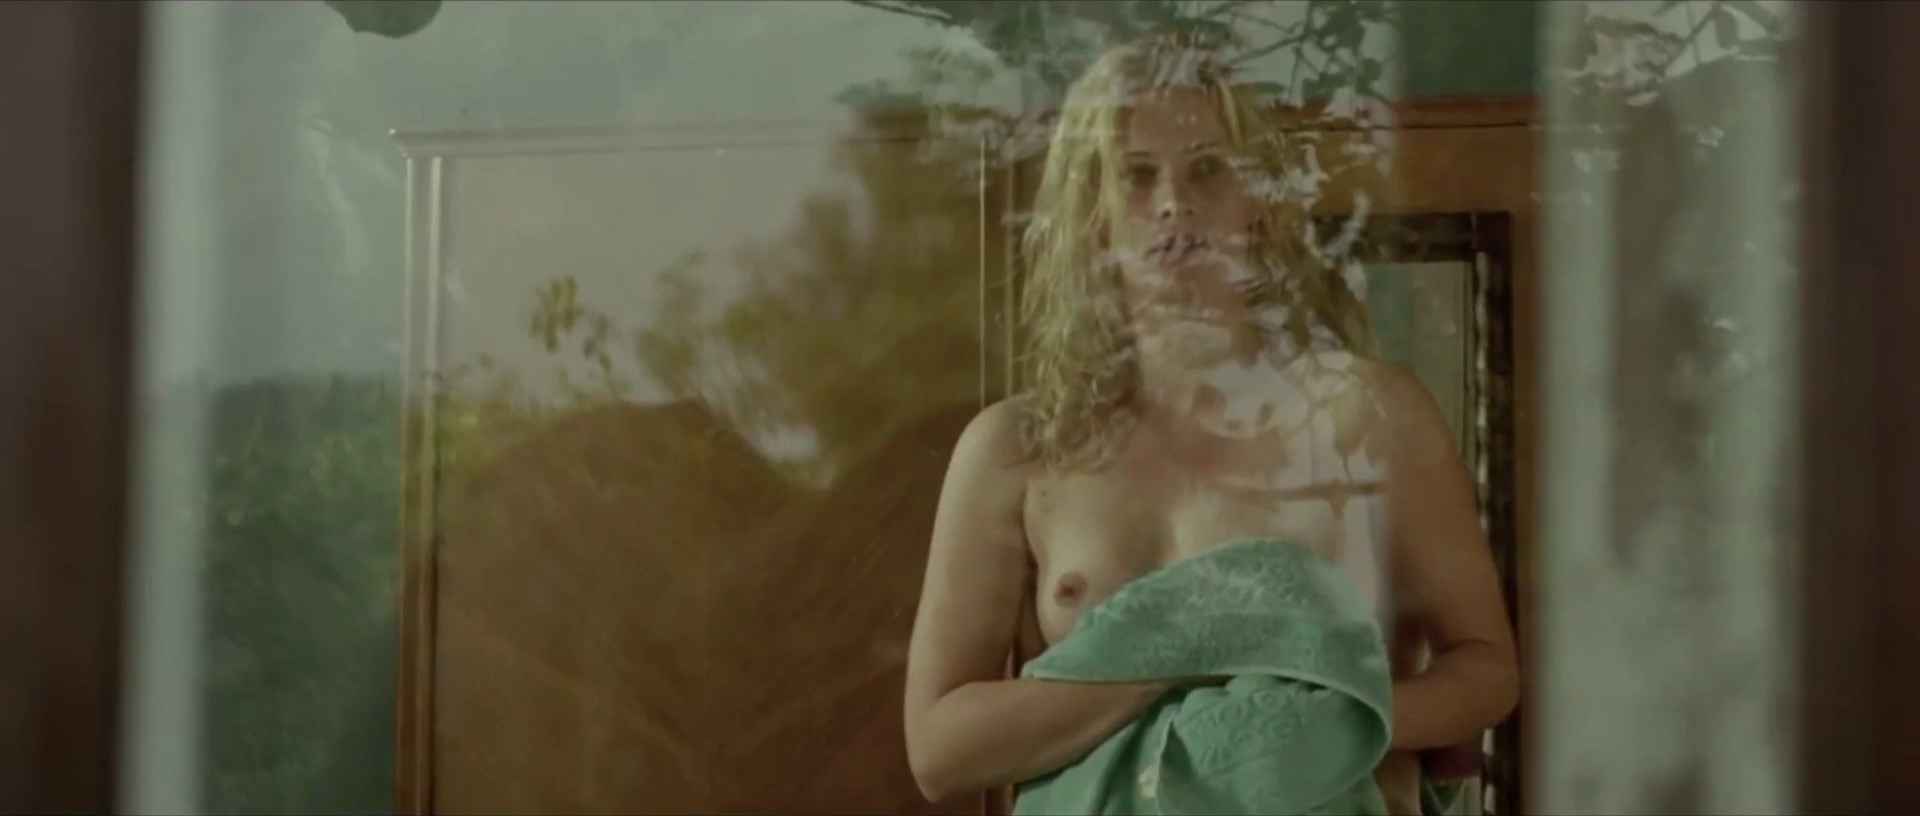 Agnieszka Warchulska Nude » Celebs Nude Video - NudeCelebVideo.Net